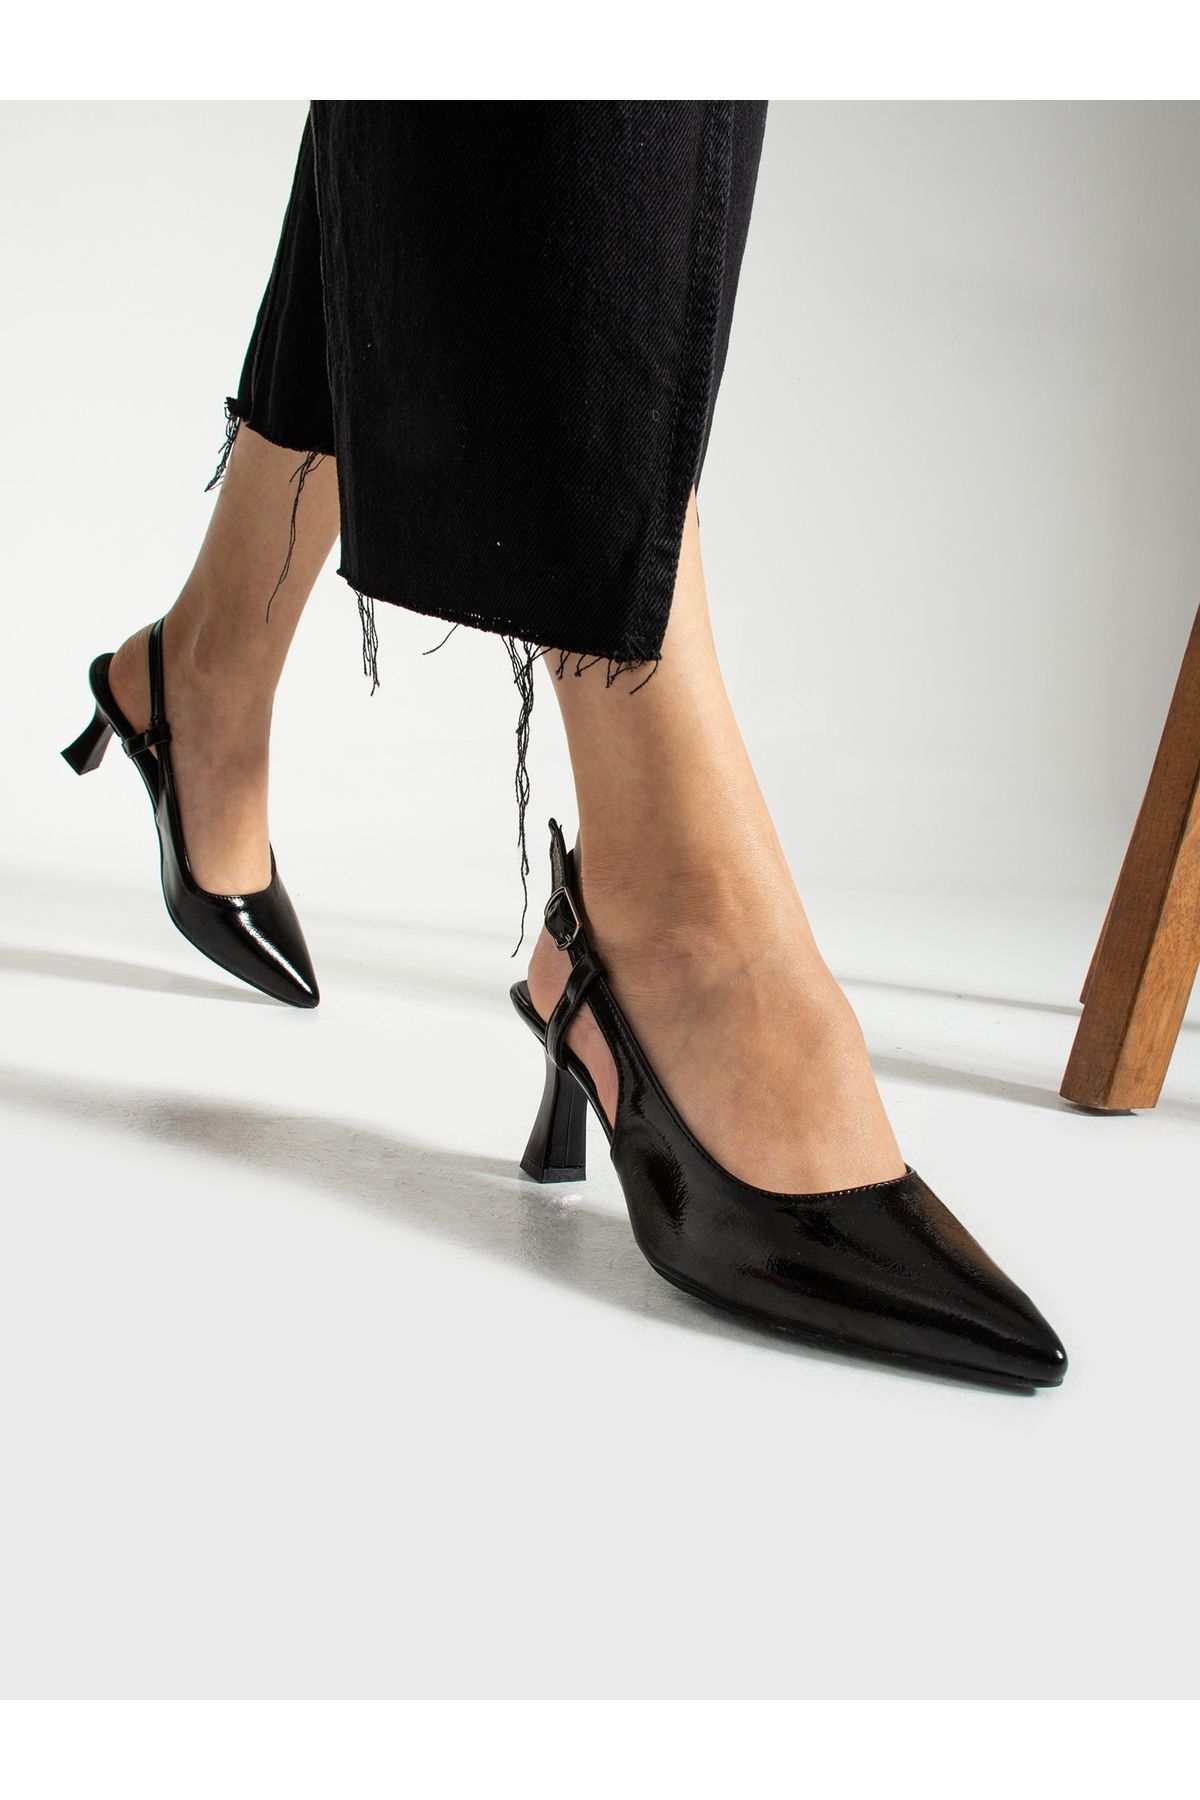 Alemdar Shoes KATE Siyah Topuklu Kadın Ayakkabı